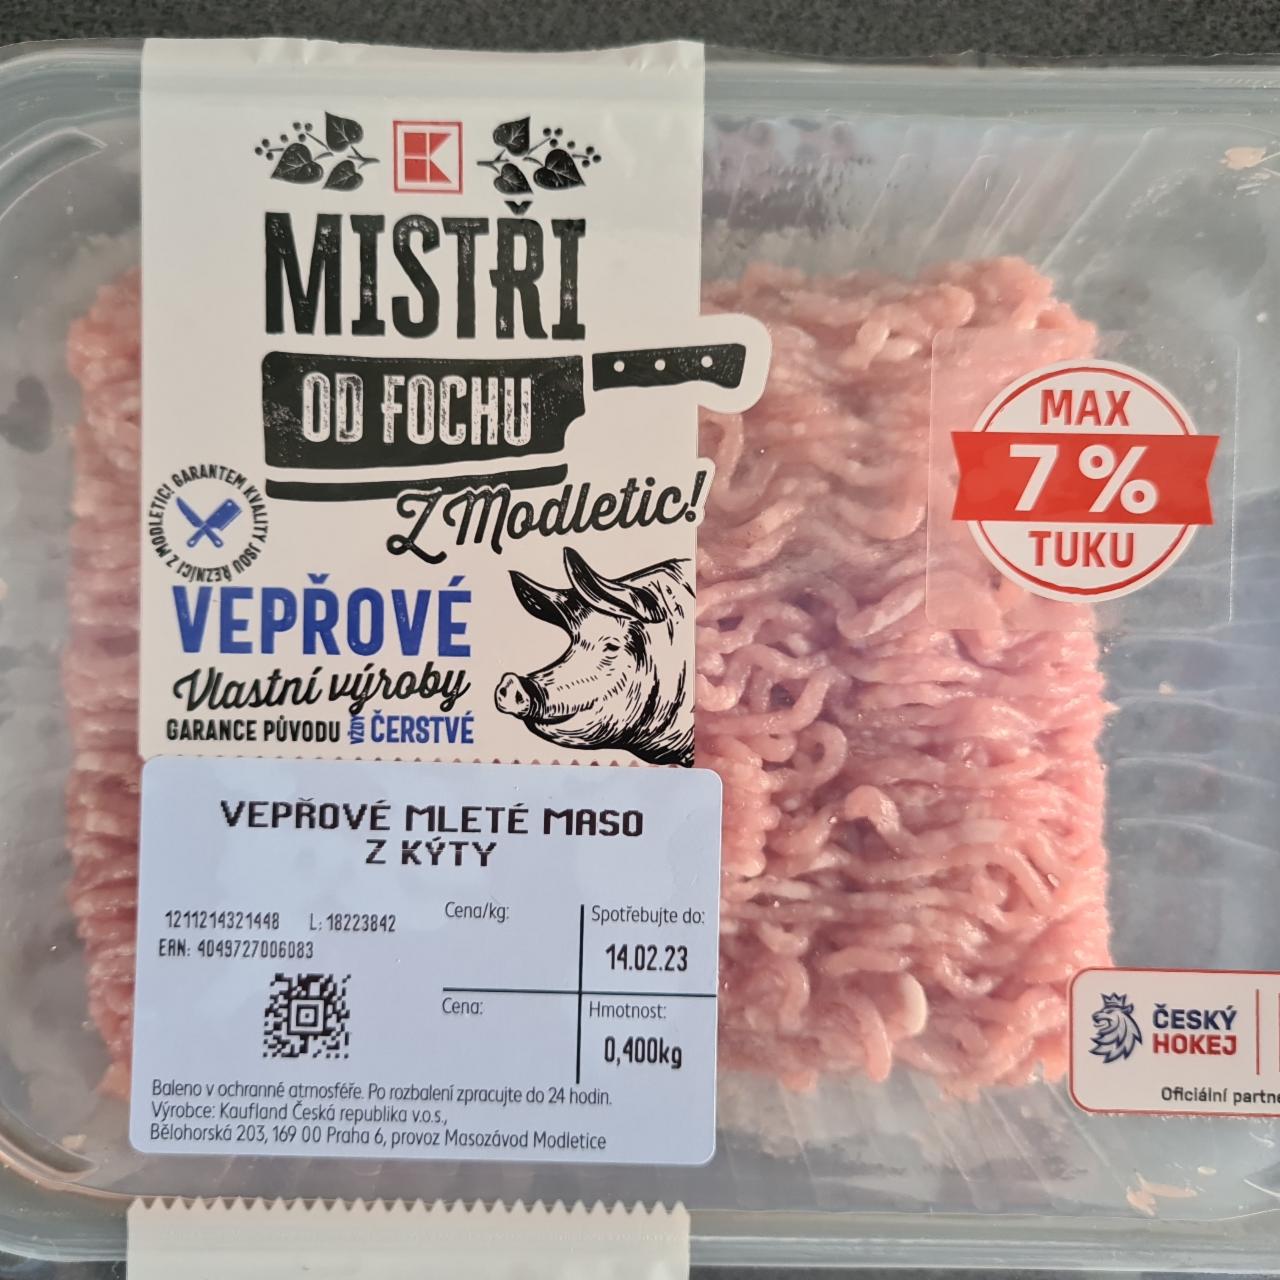 Fotografie - Vepřové mleté maso z kýty 7% tuku K-Mistři od fochu